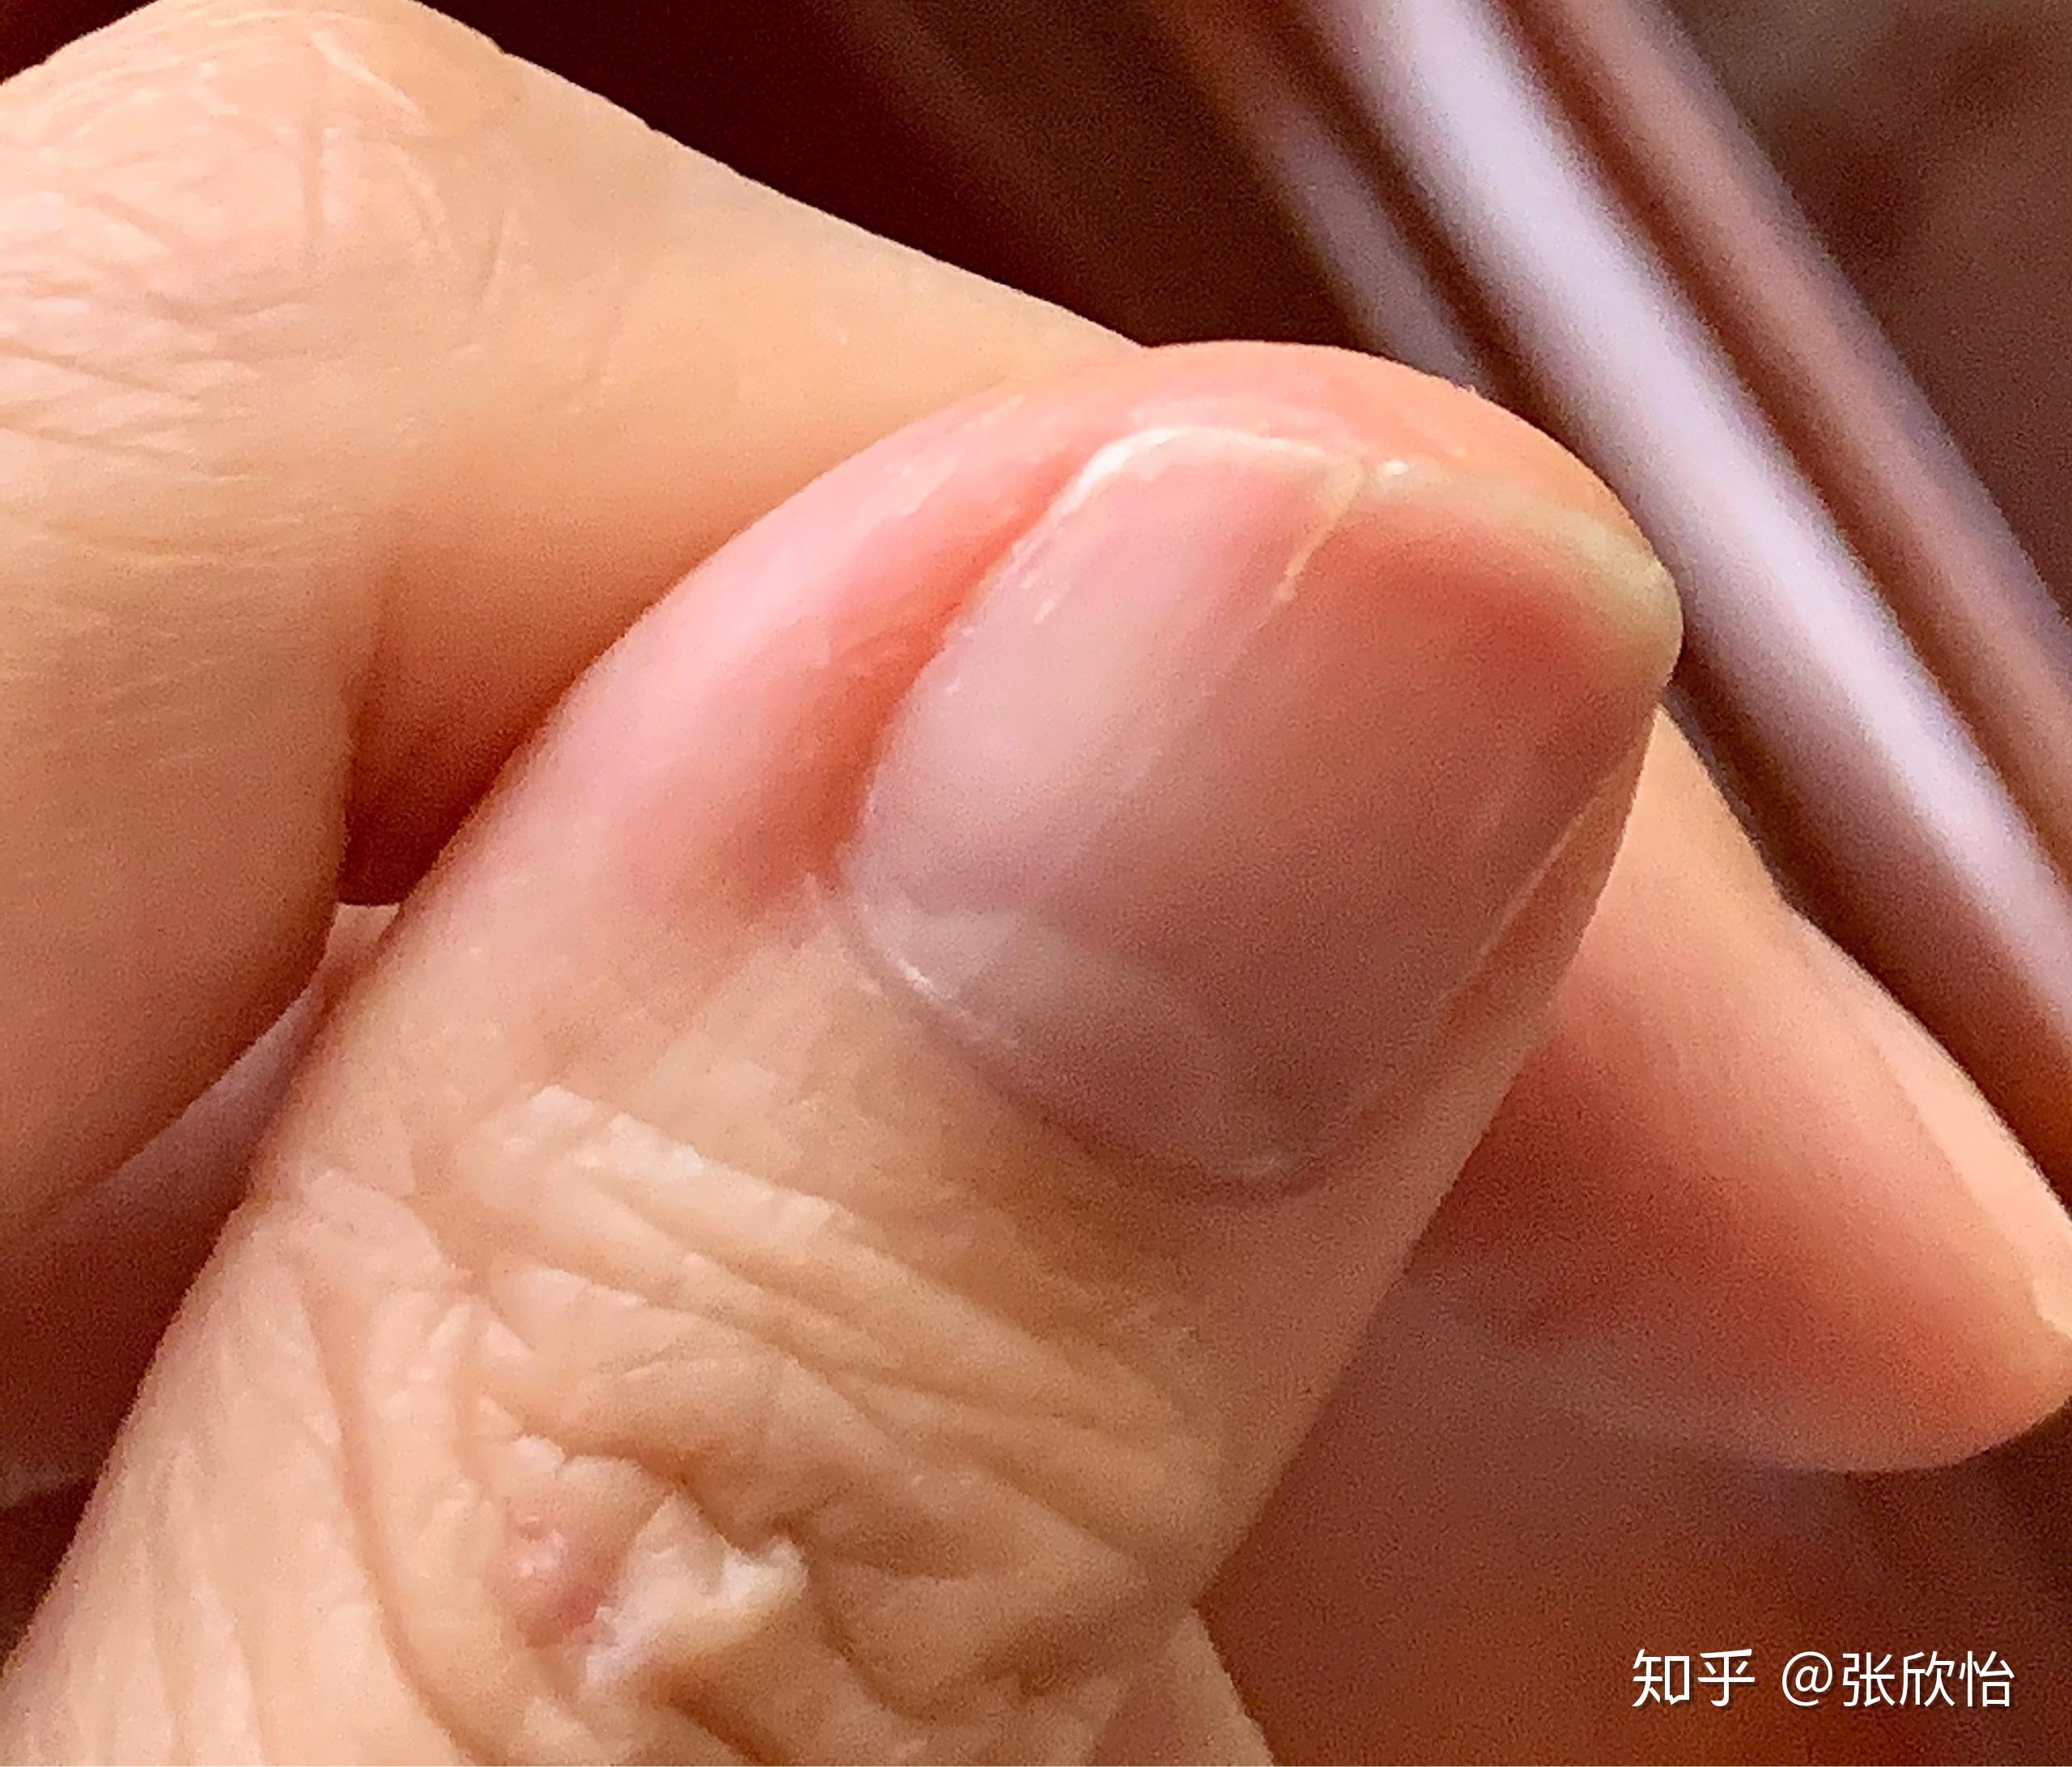 大拇指指甲有白色竖纹5年了今年从竖纹出经常裂开求助